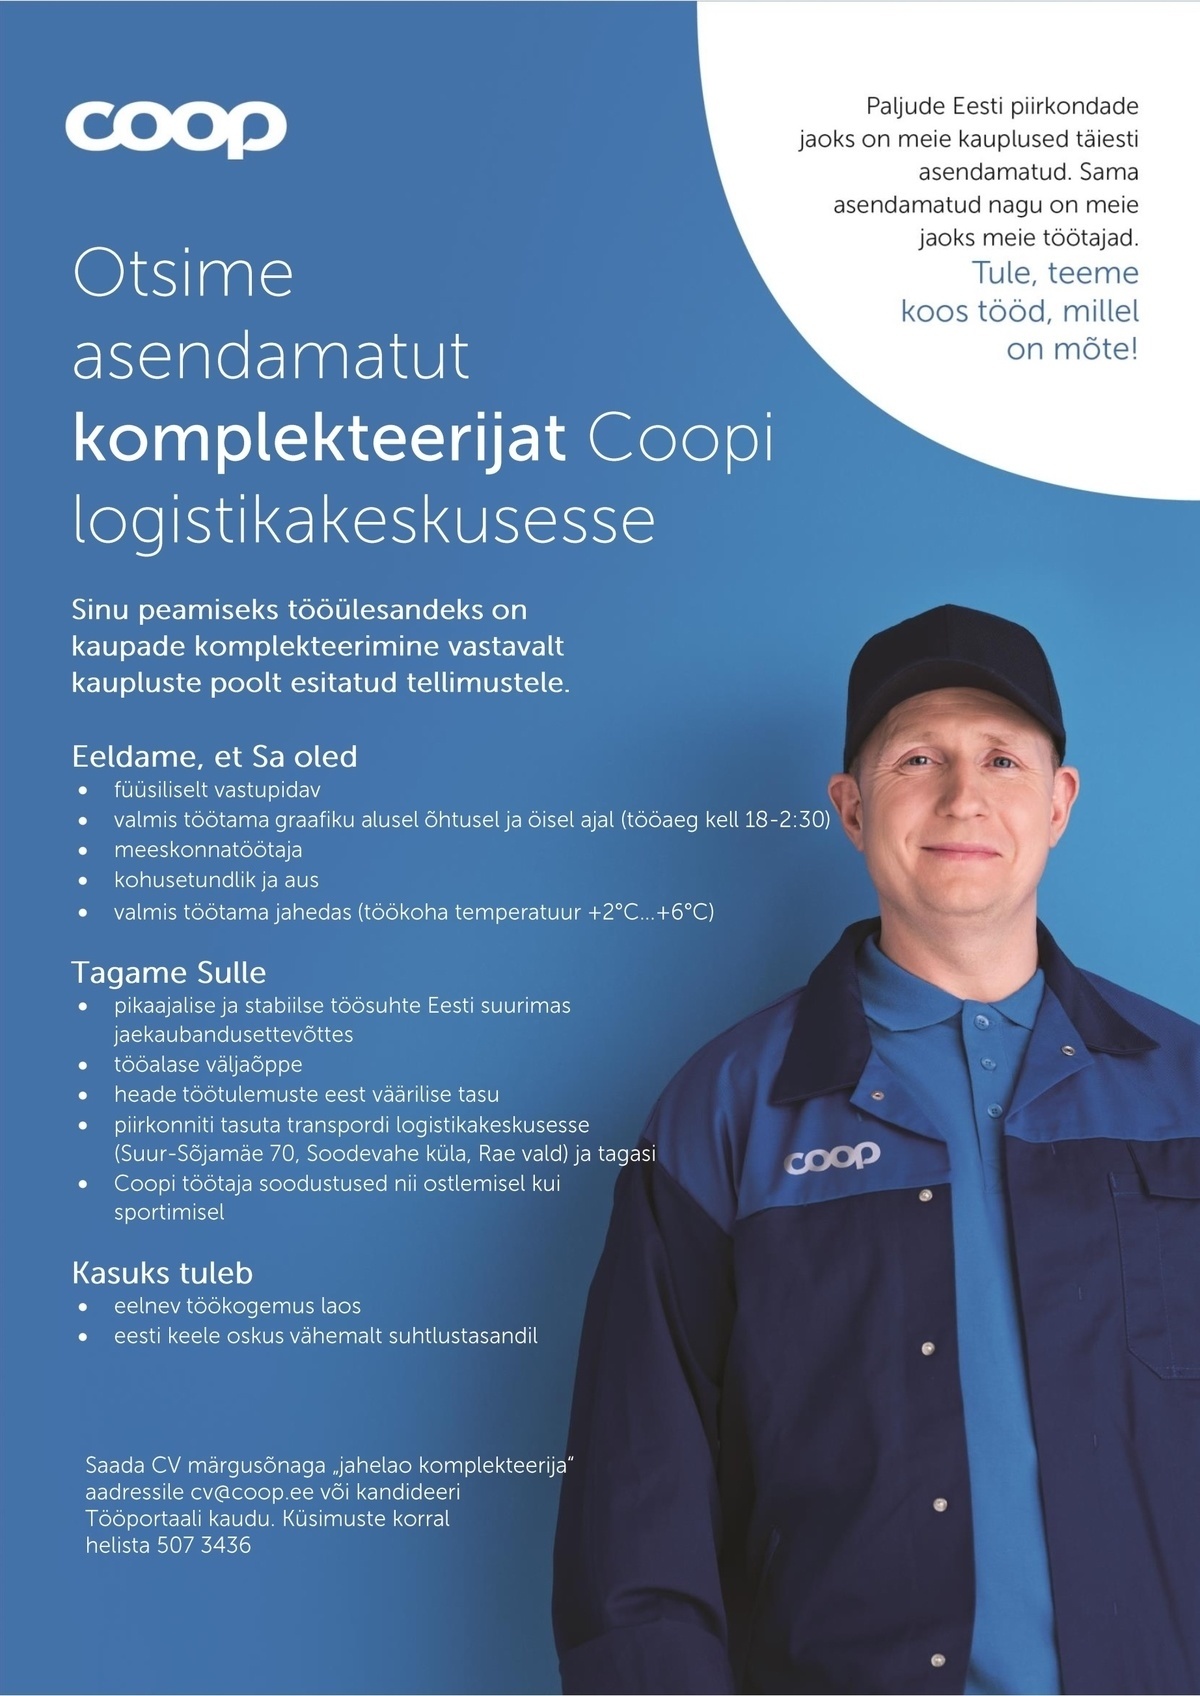 Coop Eesti Keskühistu Komplekteerija (puu- ja juurviljaladu)